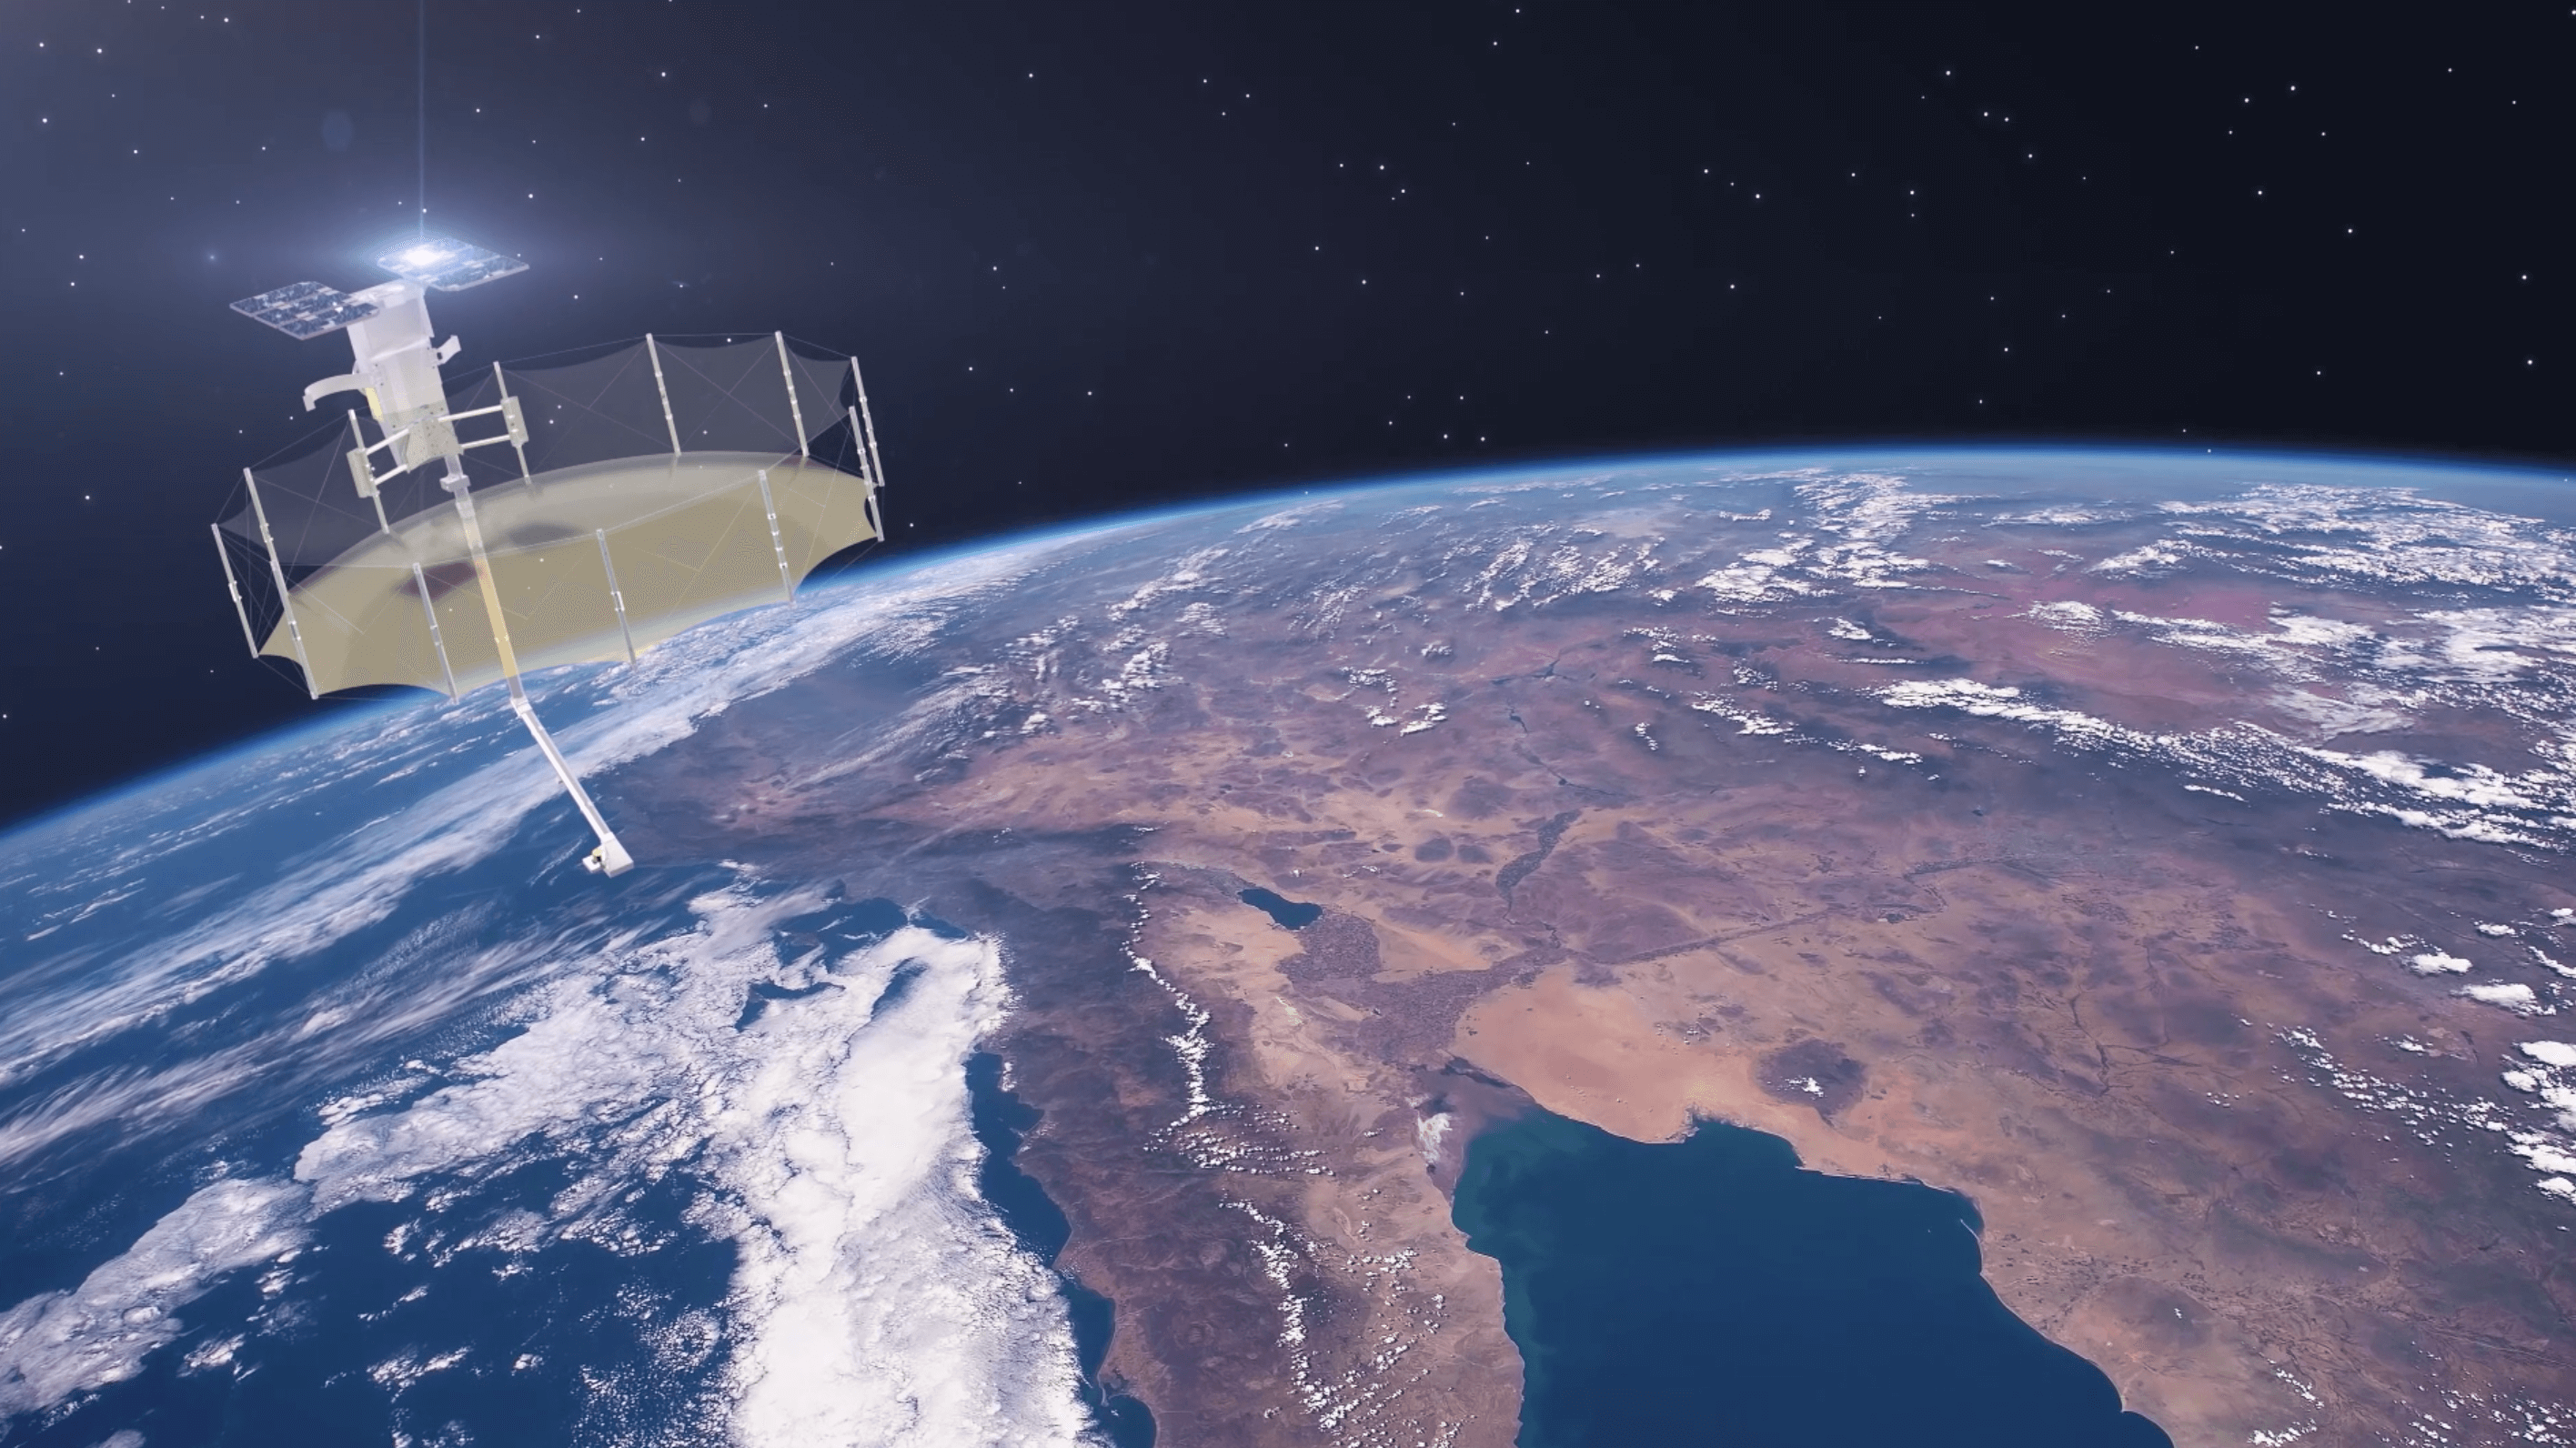 capella space reveals new satellite